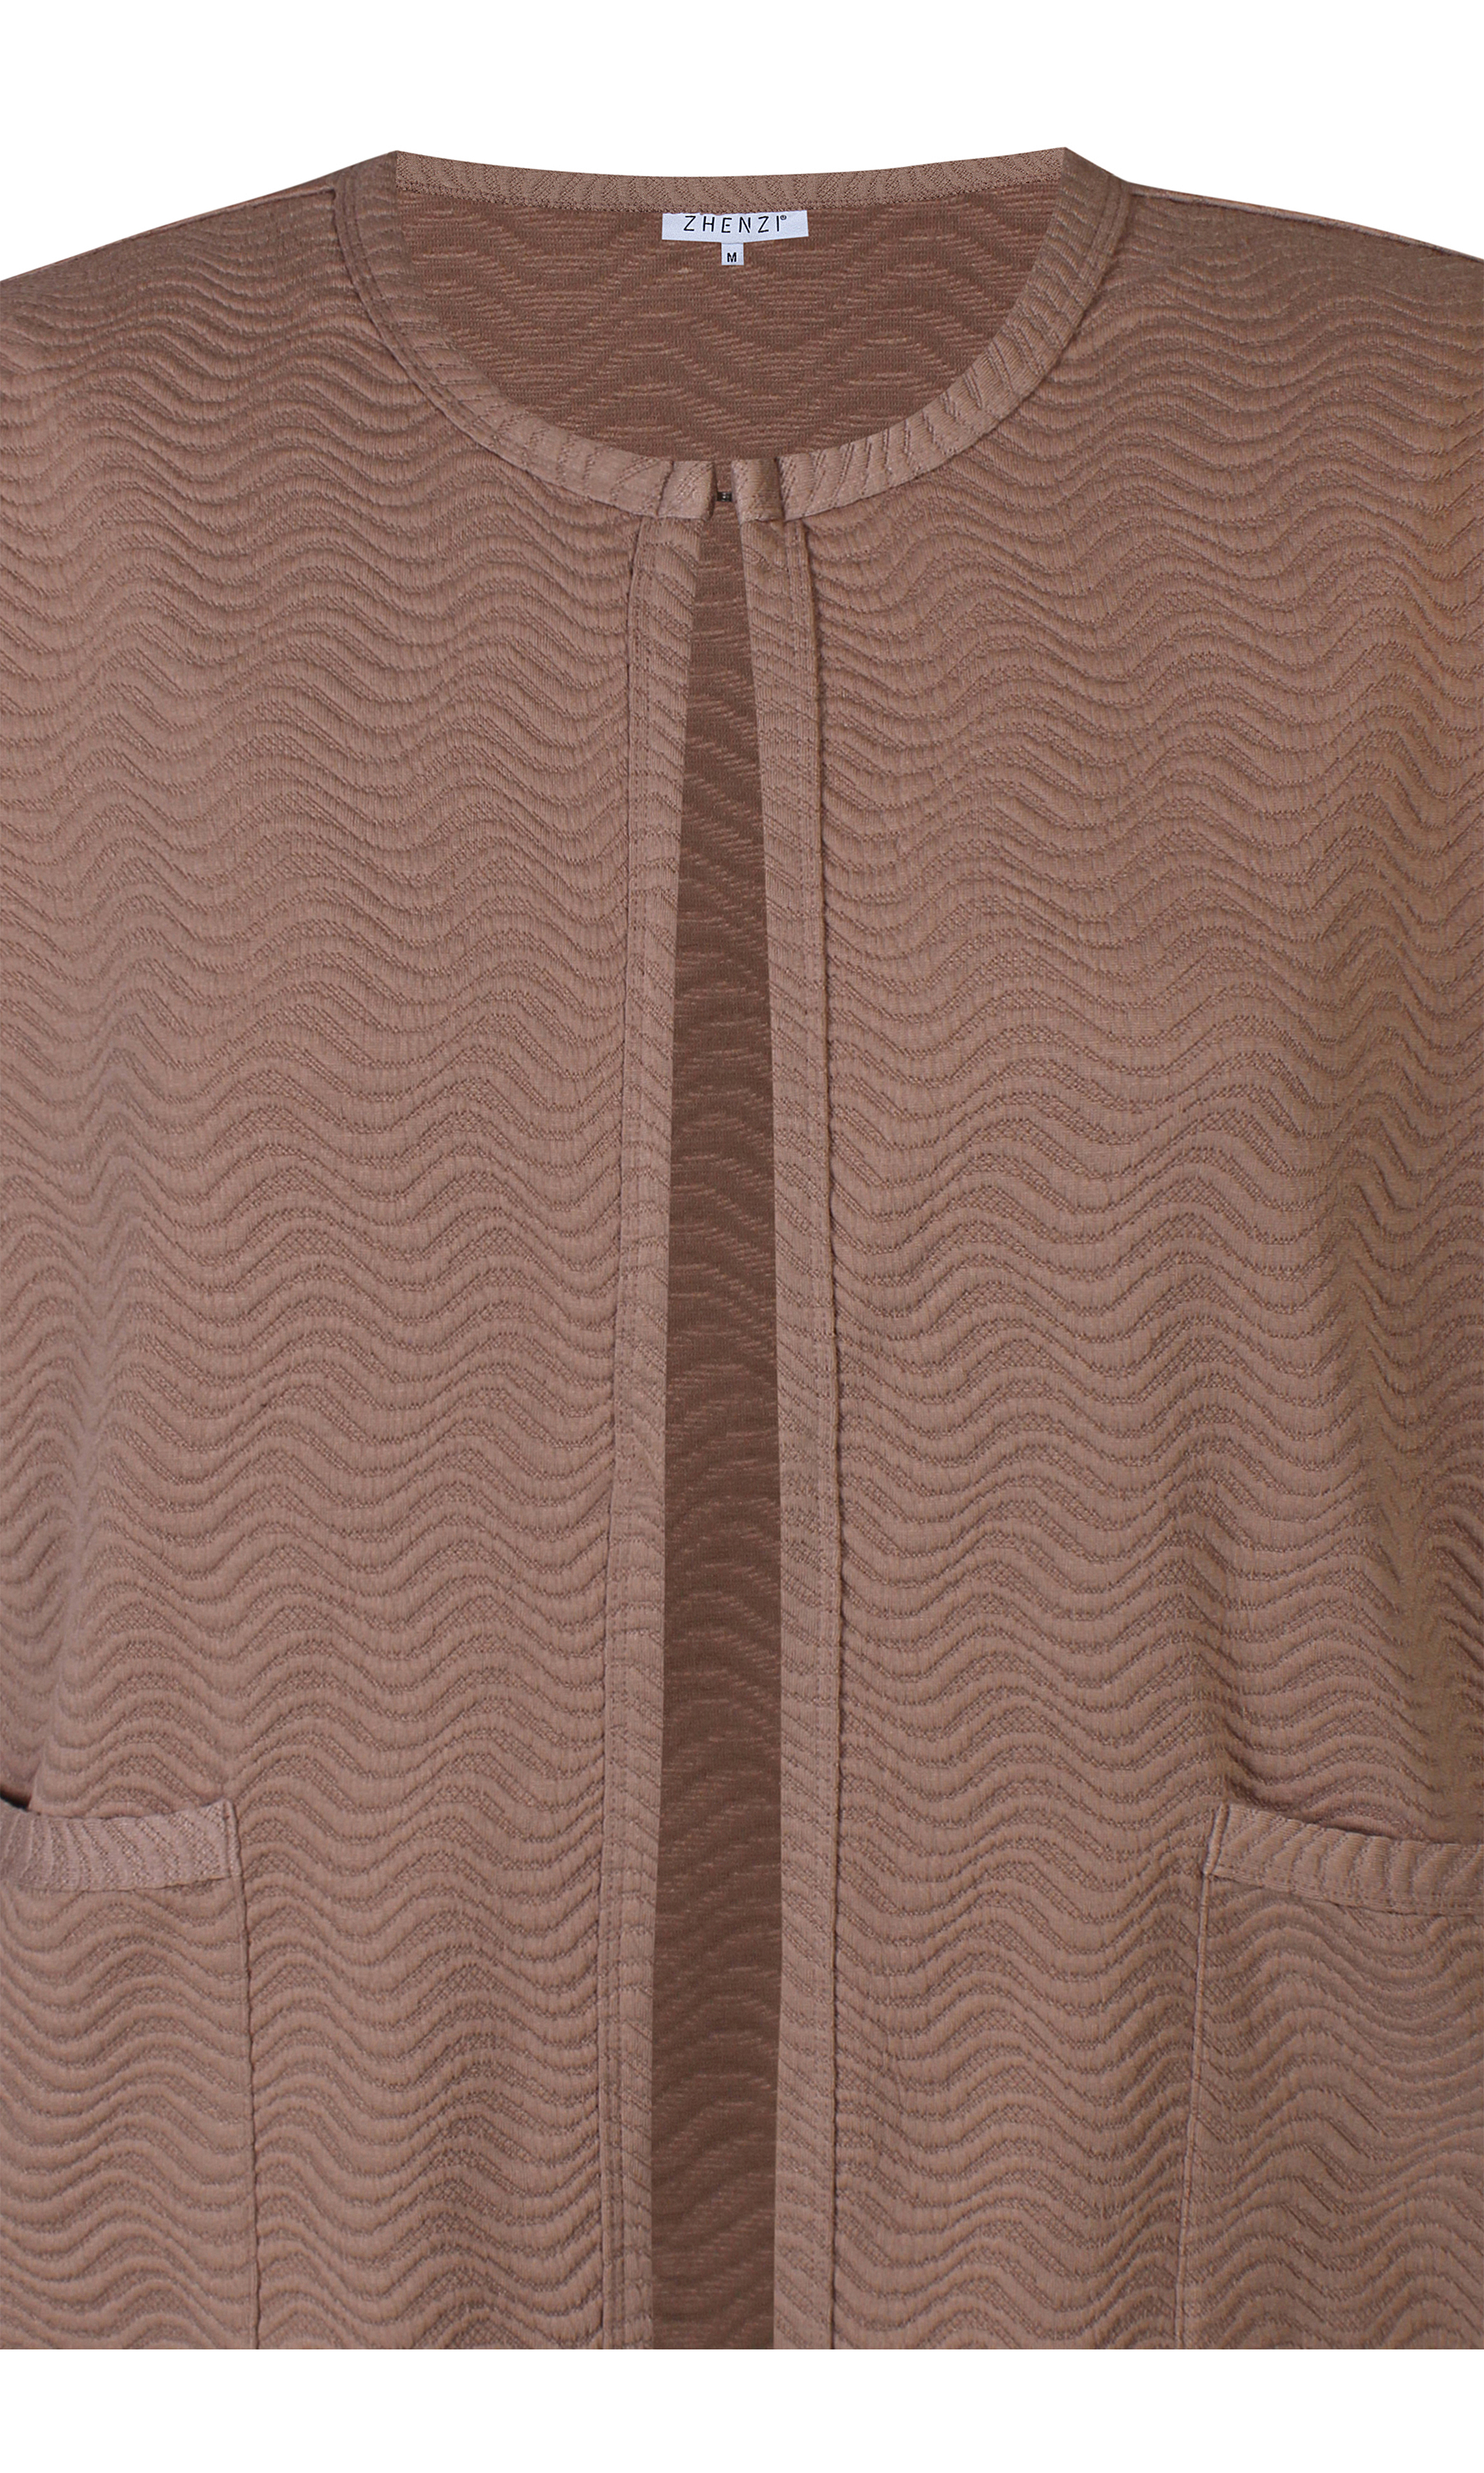 REIMER - Lys brun cardigan med jacquard struktur fra Zhenzi